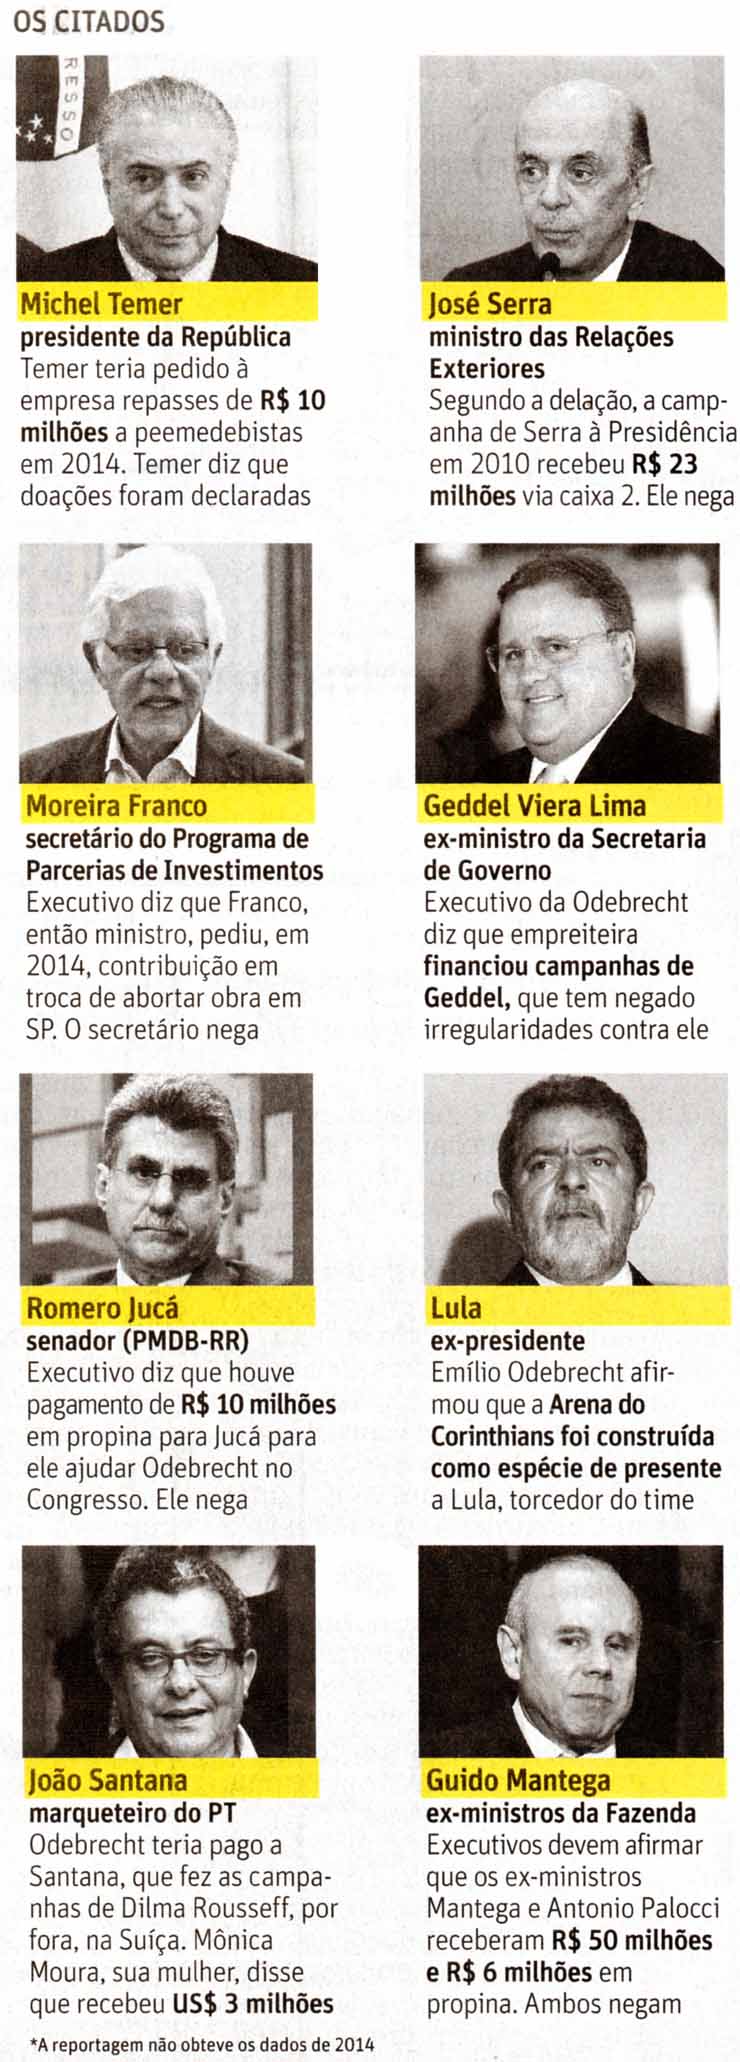 O governador de So Paulo, Geraldo Alckmin (PSDB), citado em delao da Odebrecht - Foto: Bruno Poletti - 17.out.2016/Folhapress